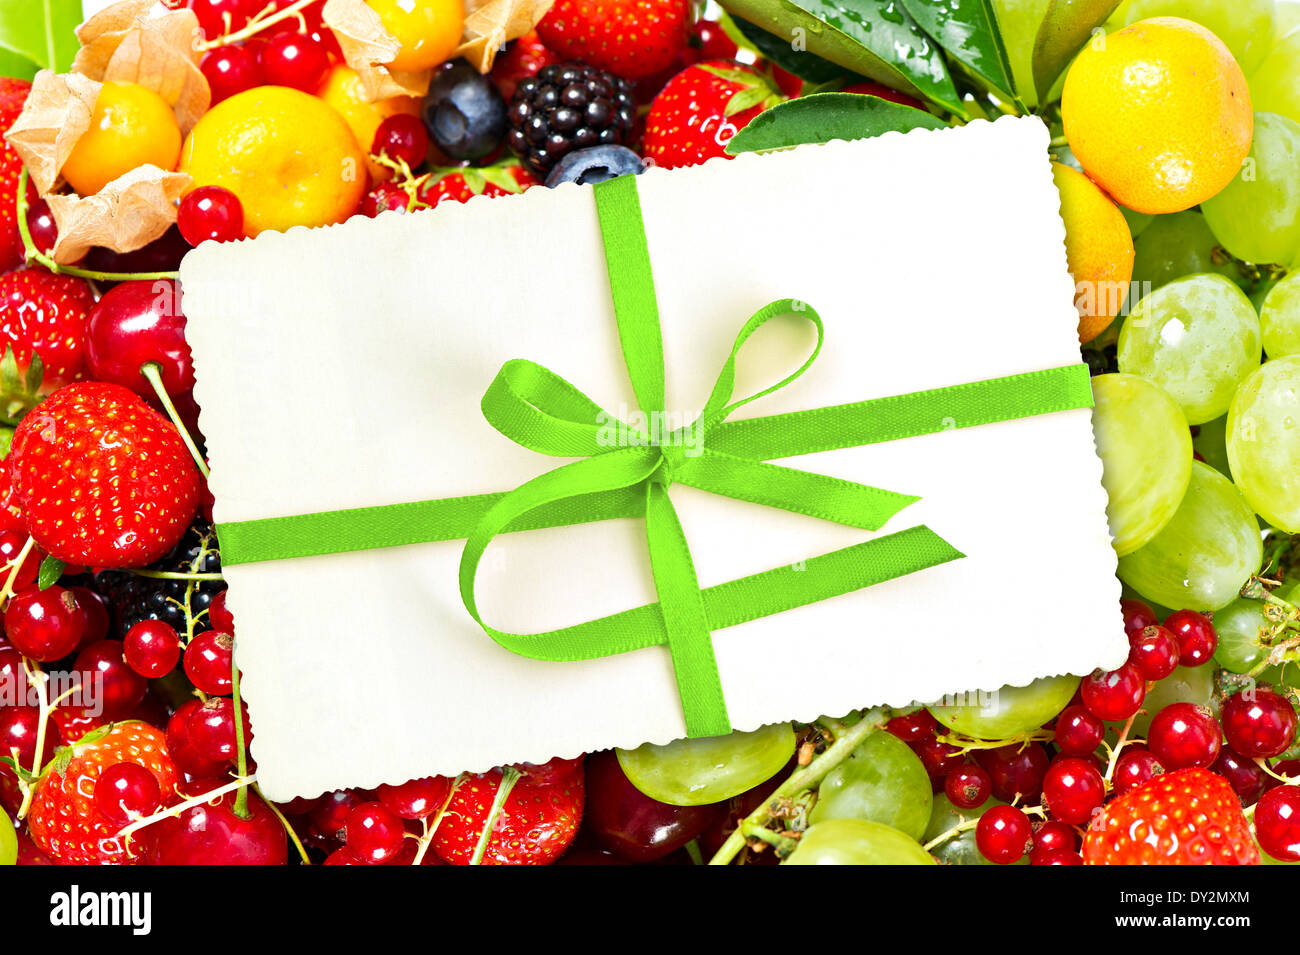 Carte-cadeau avec ruban vert avec des fruits et baies Banque D'Images